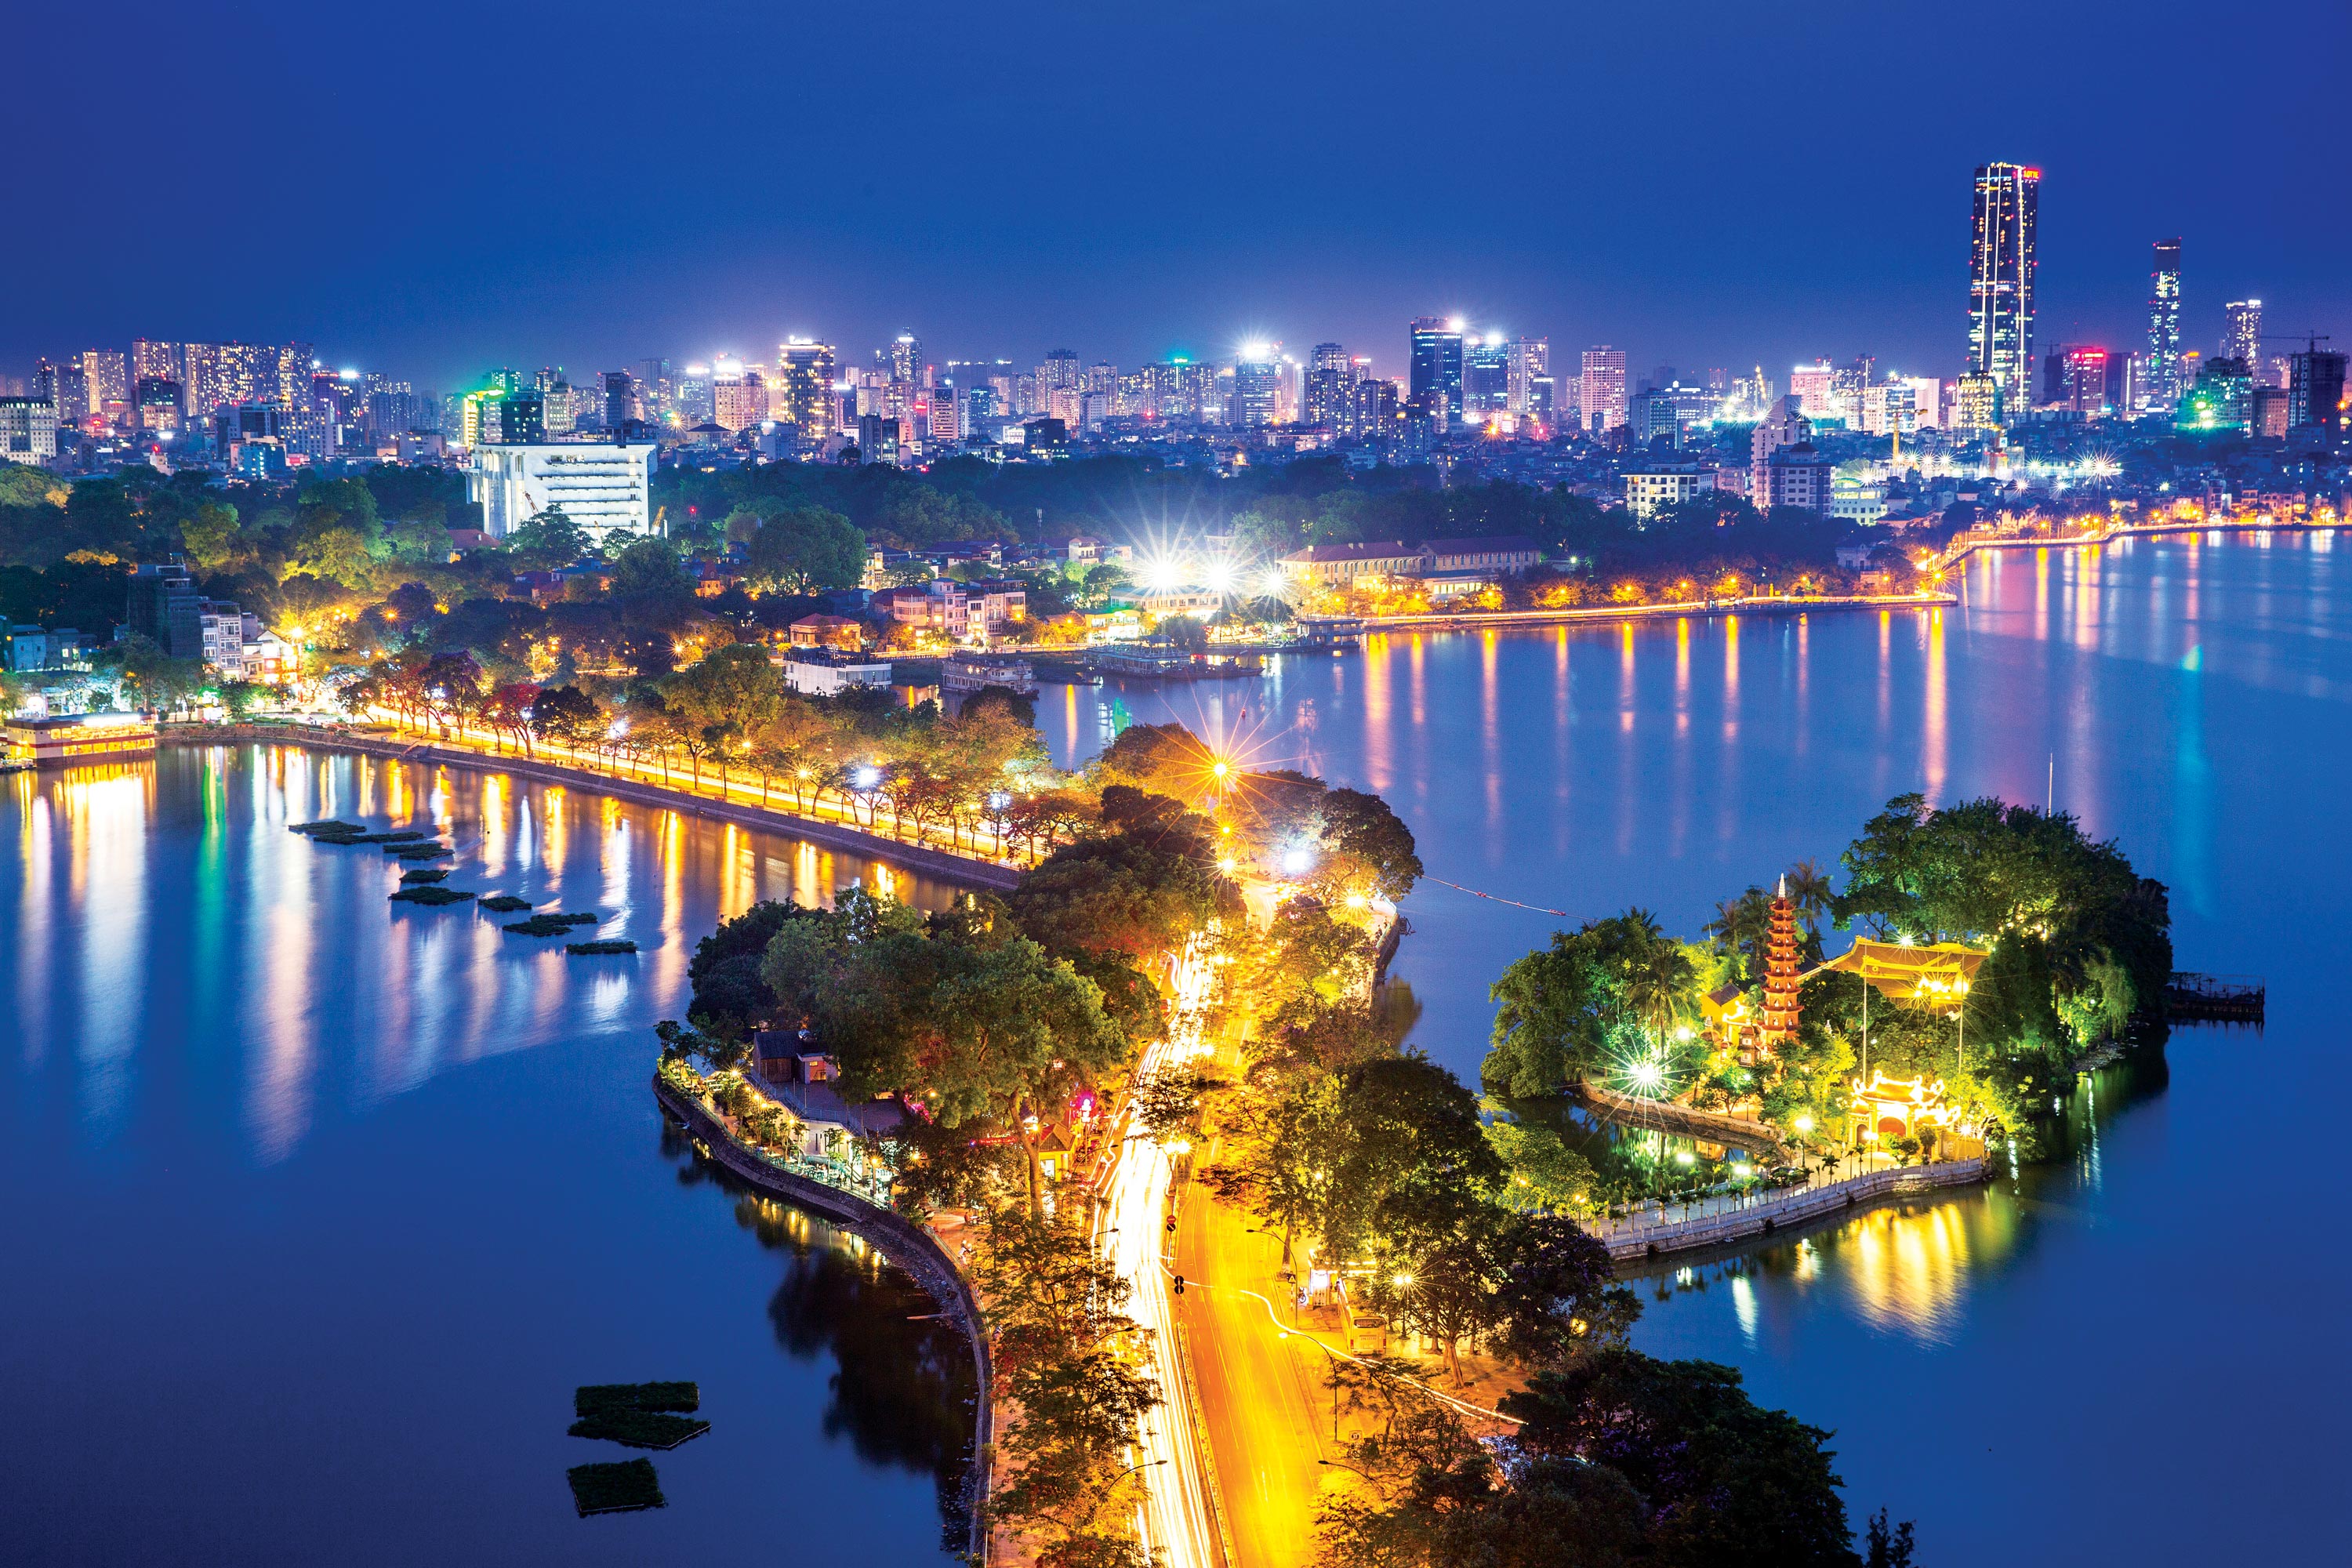 Quảng bá du lịch Hà Nội: Hà Nội là một trong những thành phố đẹp và lịch sử nhất của Việt Nam, với nhiều điểm đến thú vị và độc đáo. Cùng khám phá những di sản văn hóa, kiến trúc và thưởng thức những món ăn đặc trưng của Hà Nội. Hãy tham gia chương trình quảng bá du lịch Hà Nội để khám phá những điều thú vị về thành phố này.